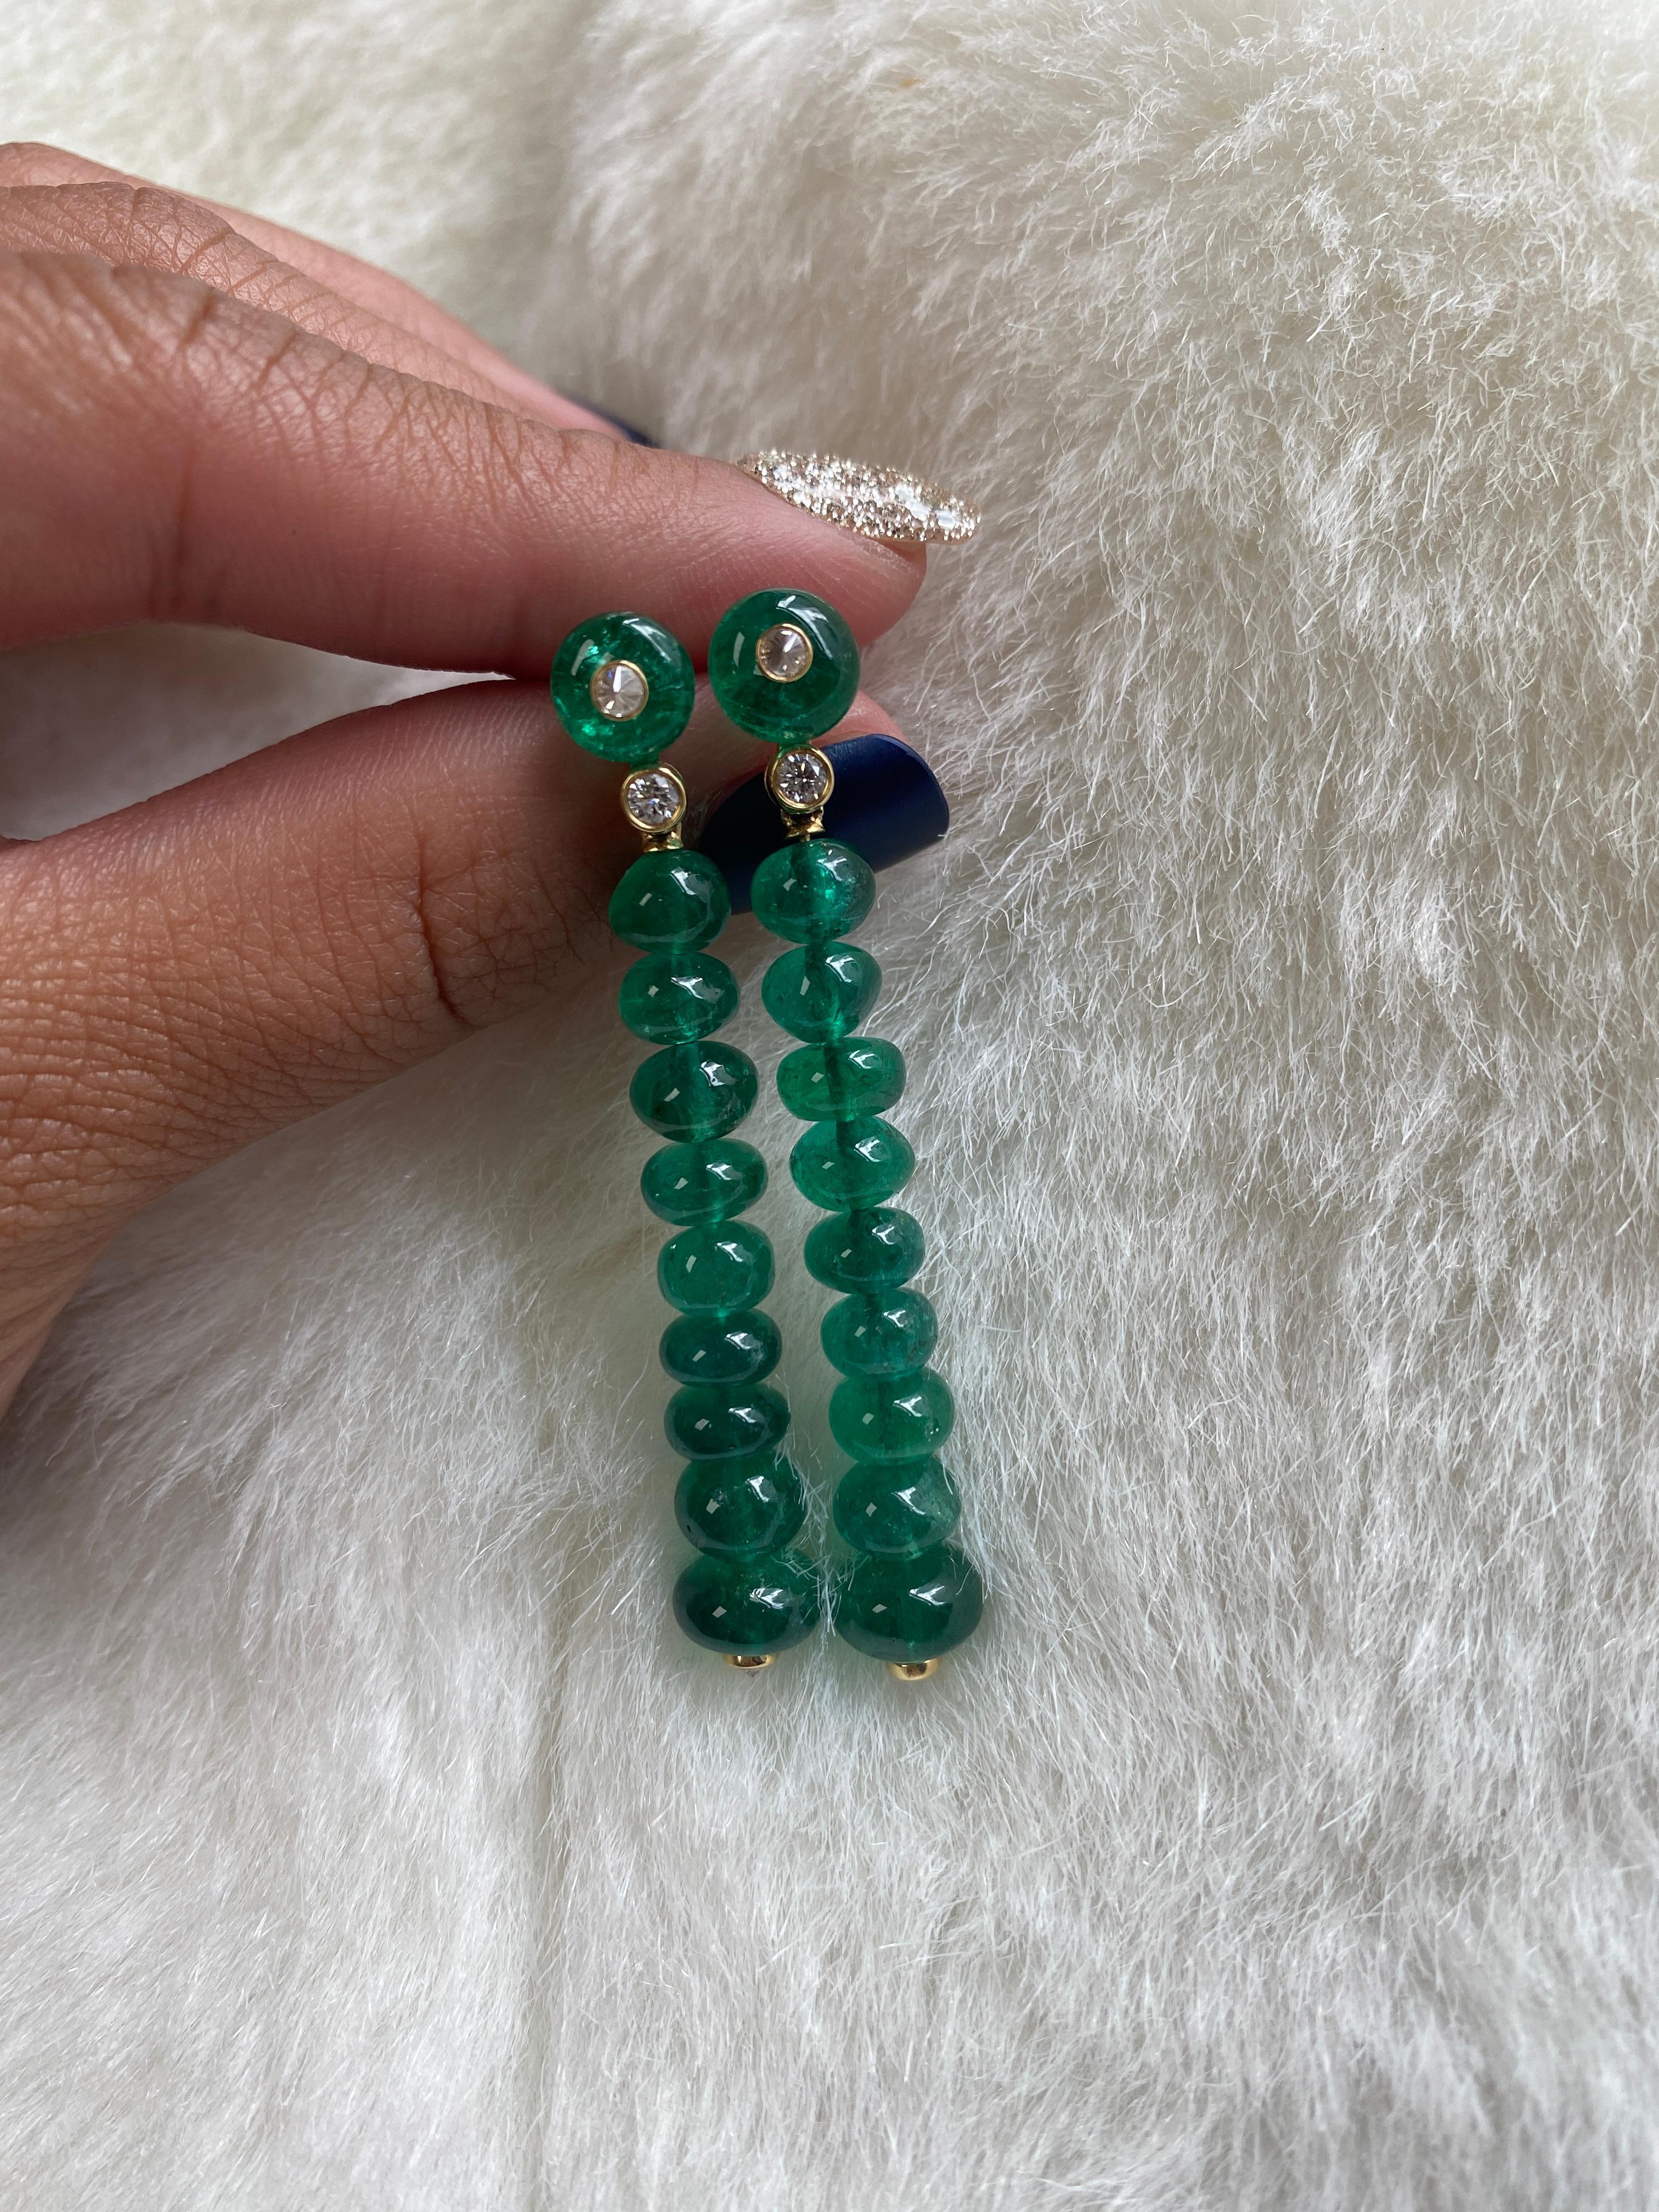 Einreihige Smaragdperlen-Ohrringe mit Diamanten aus 18 Karat Gelbgold, aus der Kollektion 'G-One'. Diese Smaragdperlen-Ohrringe sind ein ganz besonderes Stück, das Sie Ihrer persönlichen Sammlung hinzufügen können.

* Edelstein: 100% Erde abgebaut